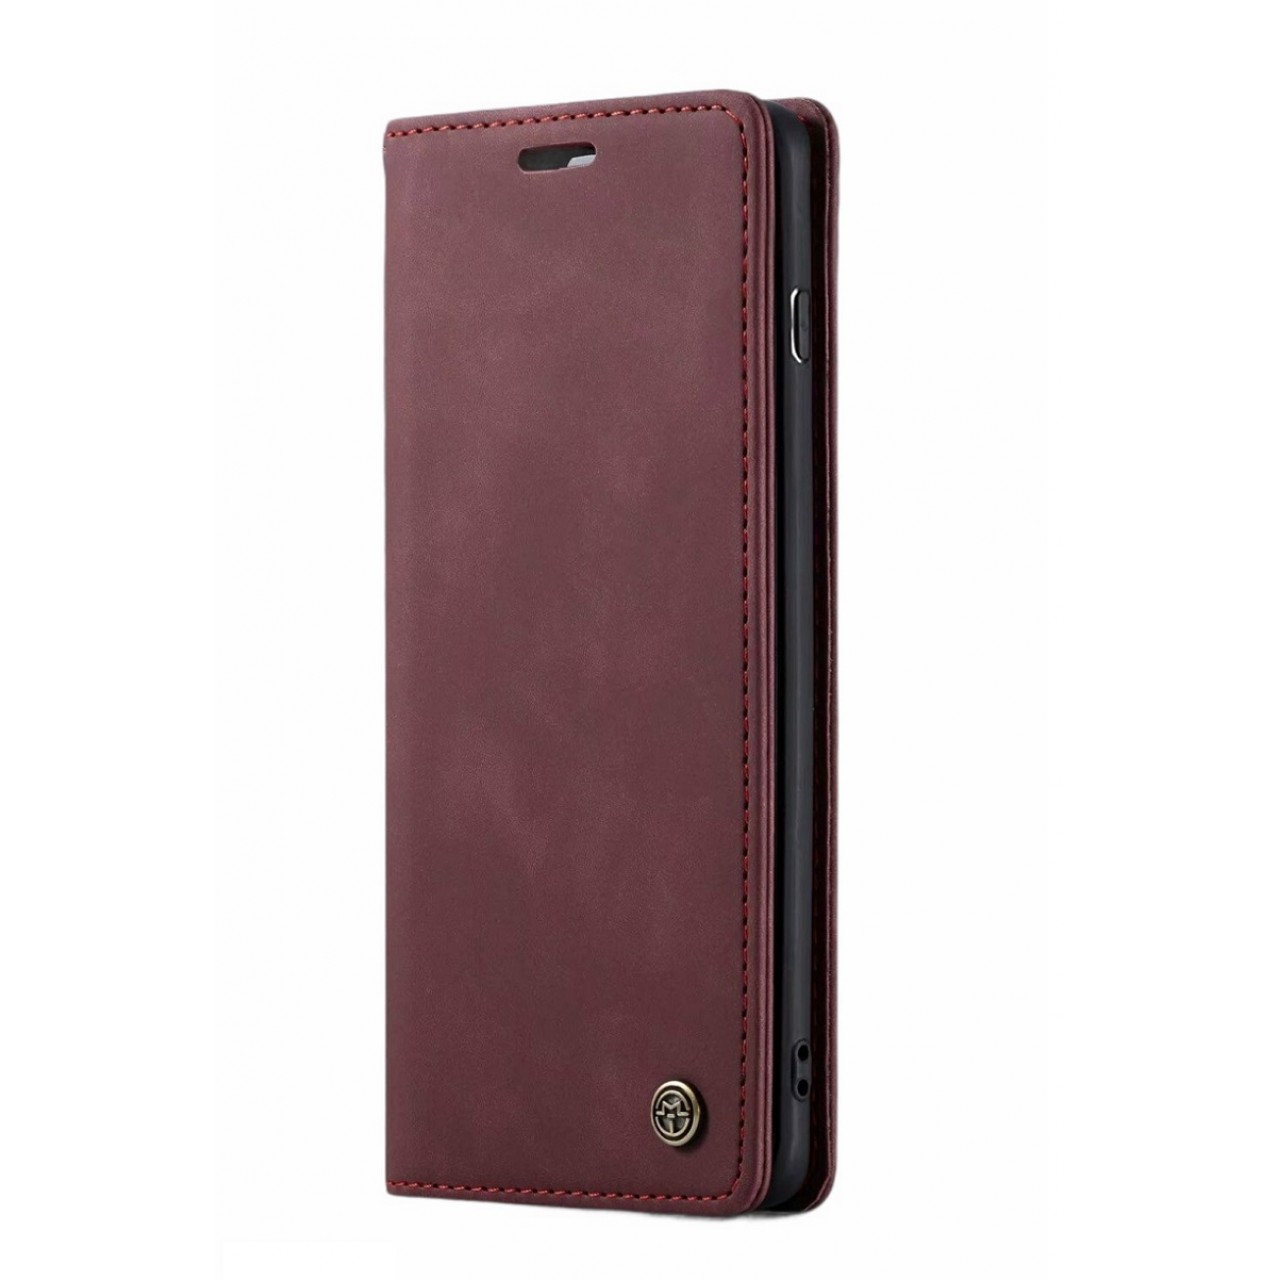 Θήκη Προστασίας Δερμάτινη Τύπου Wallet iPhone XR - Luxury Leather Flip Case Caseme - Plum